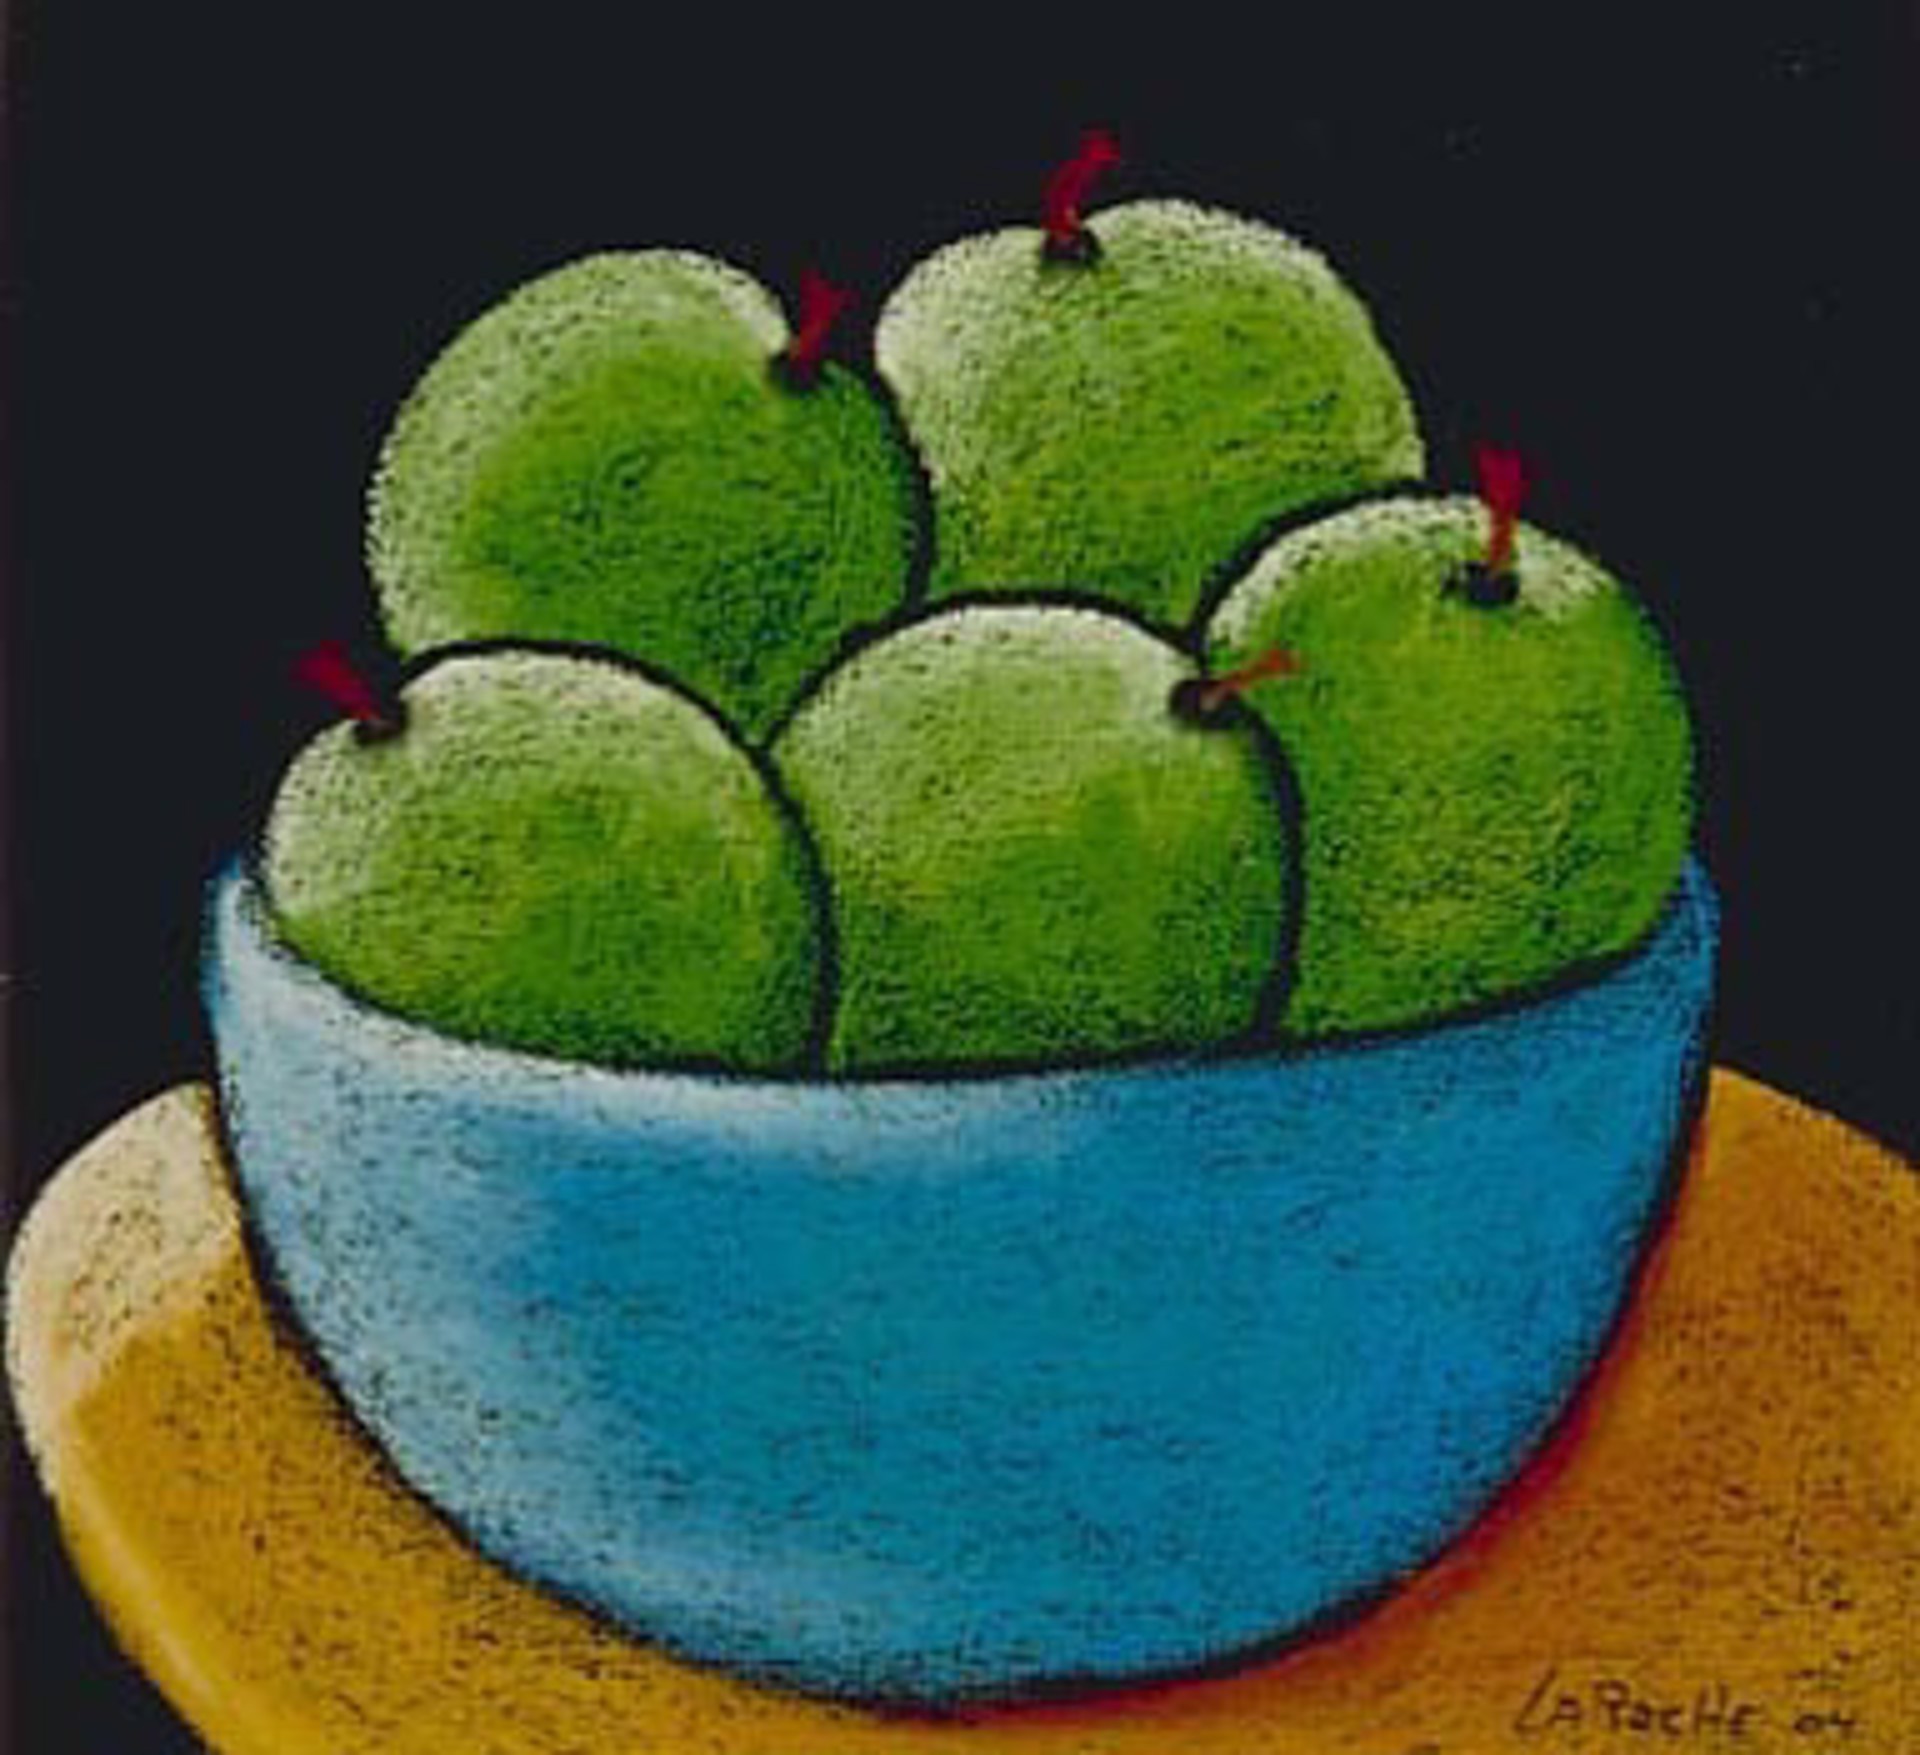 Granny Smith Apples by Carole LaRoche